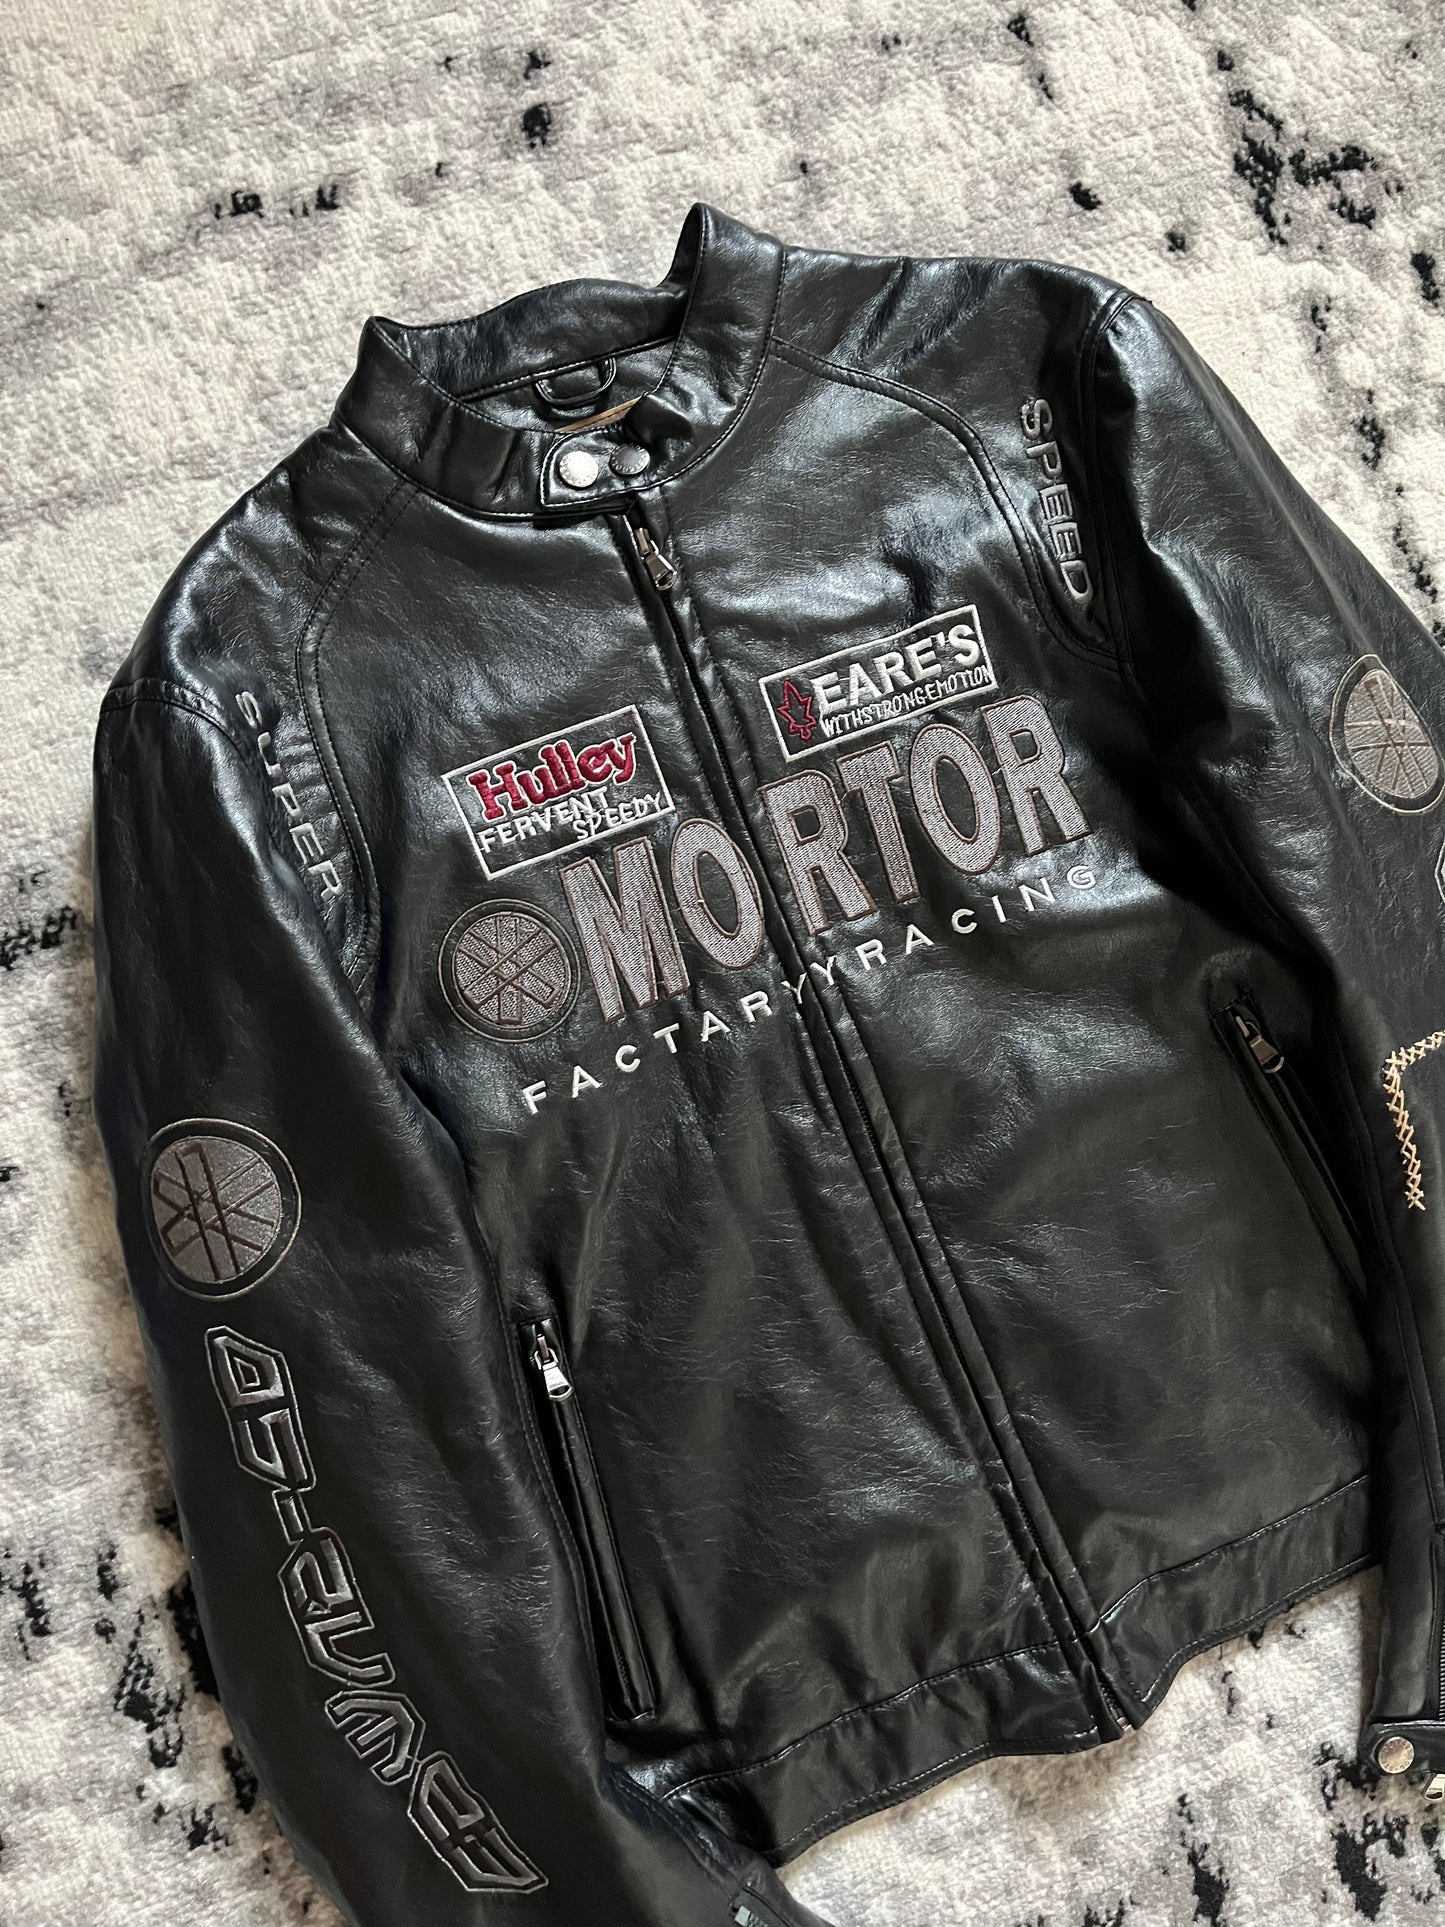 Stegol Mortor Biker Leather Jacket (L/XL)